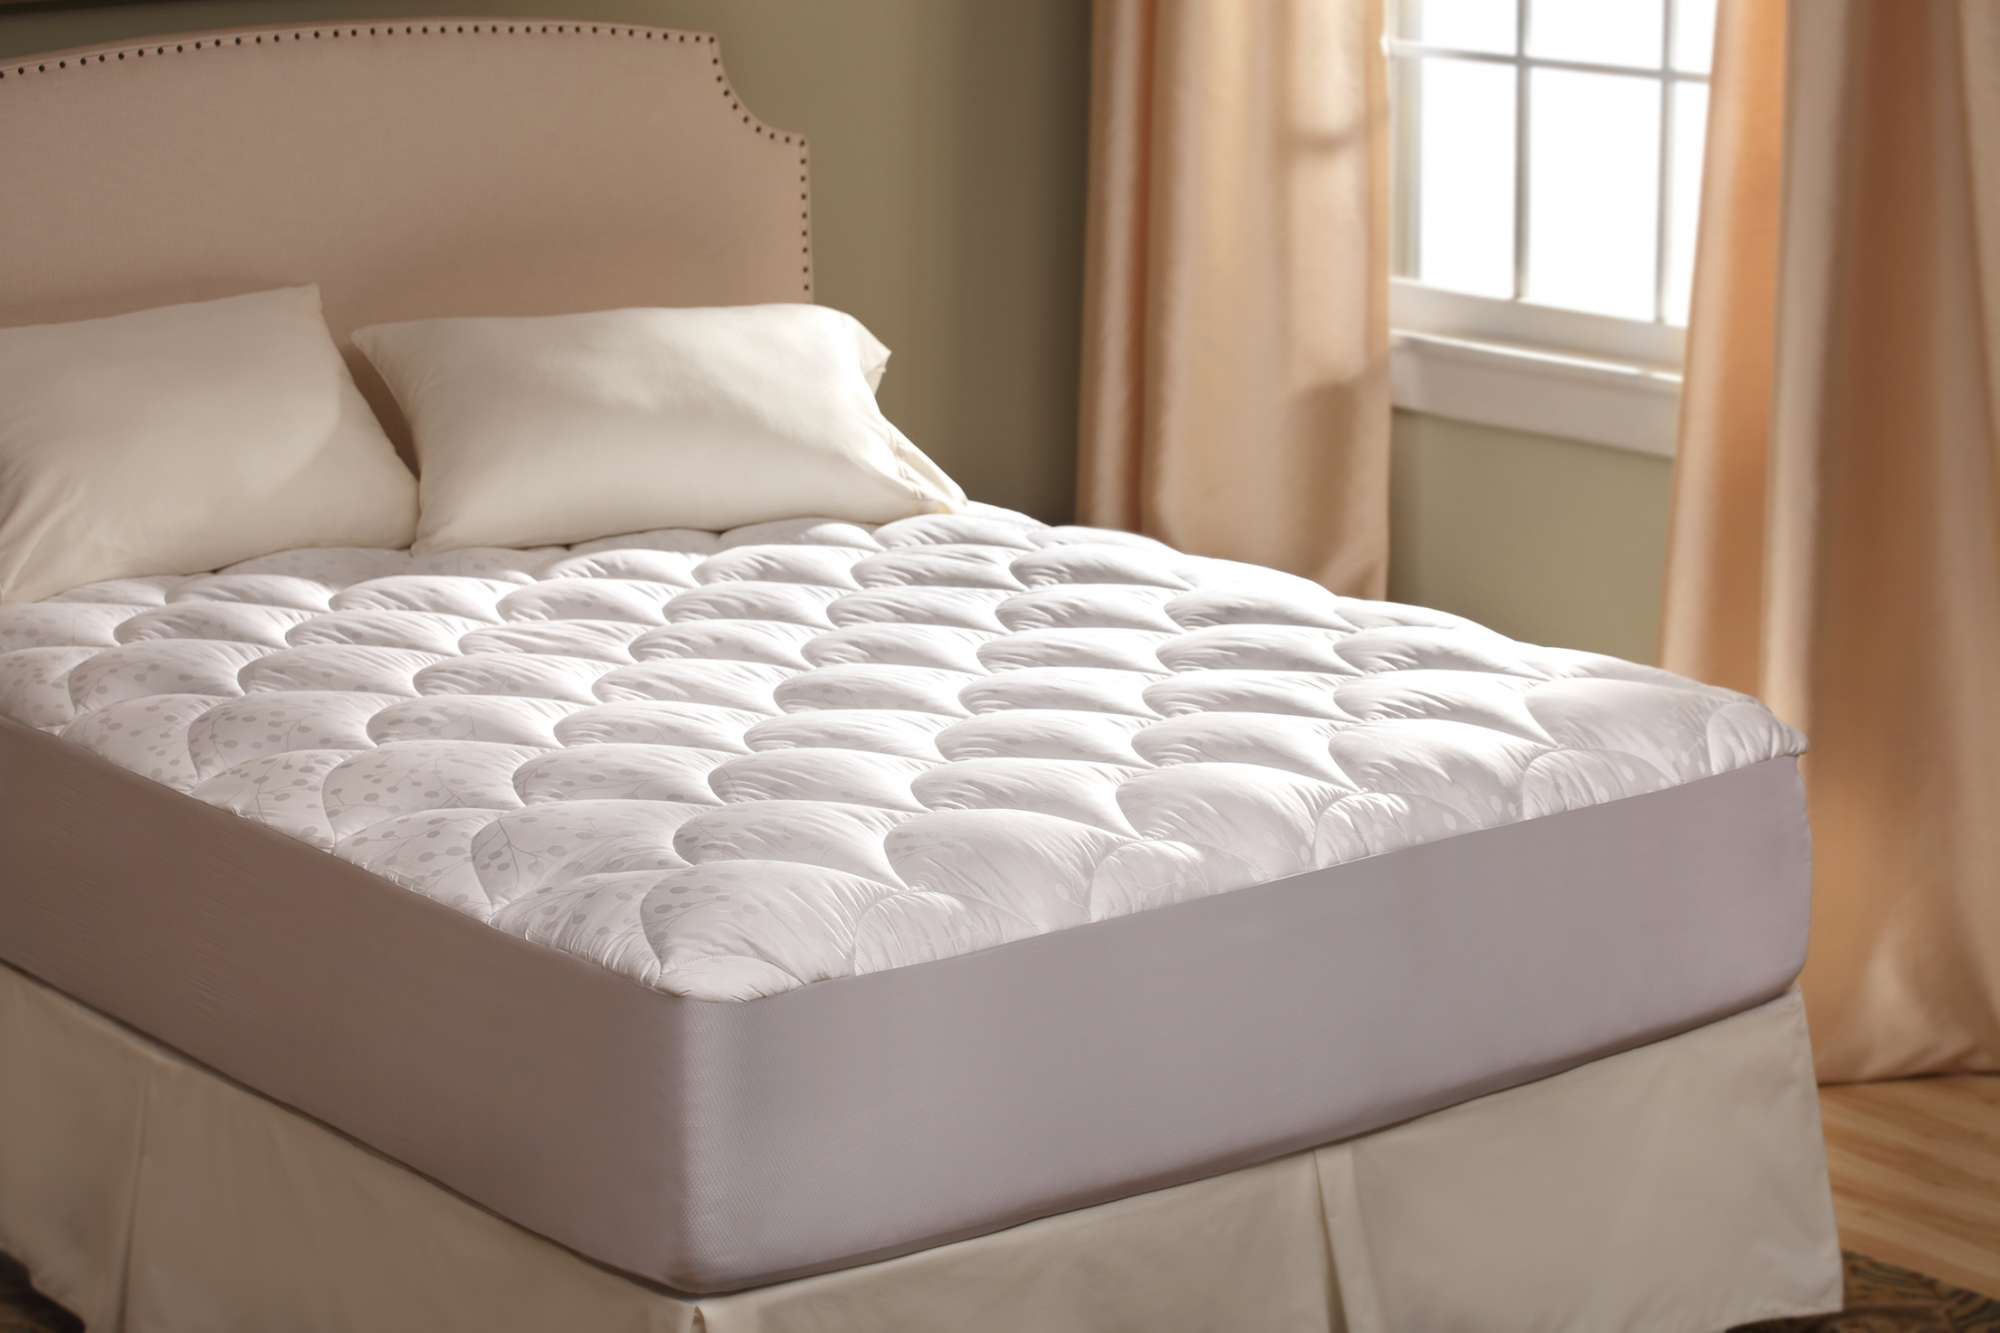 mattress pad cover manufacturer